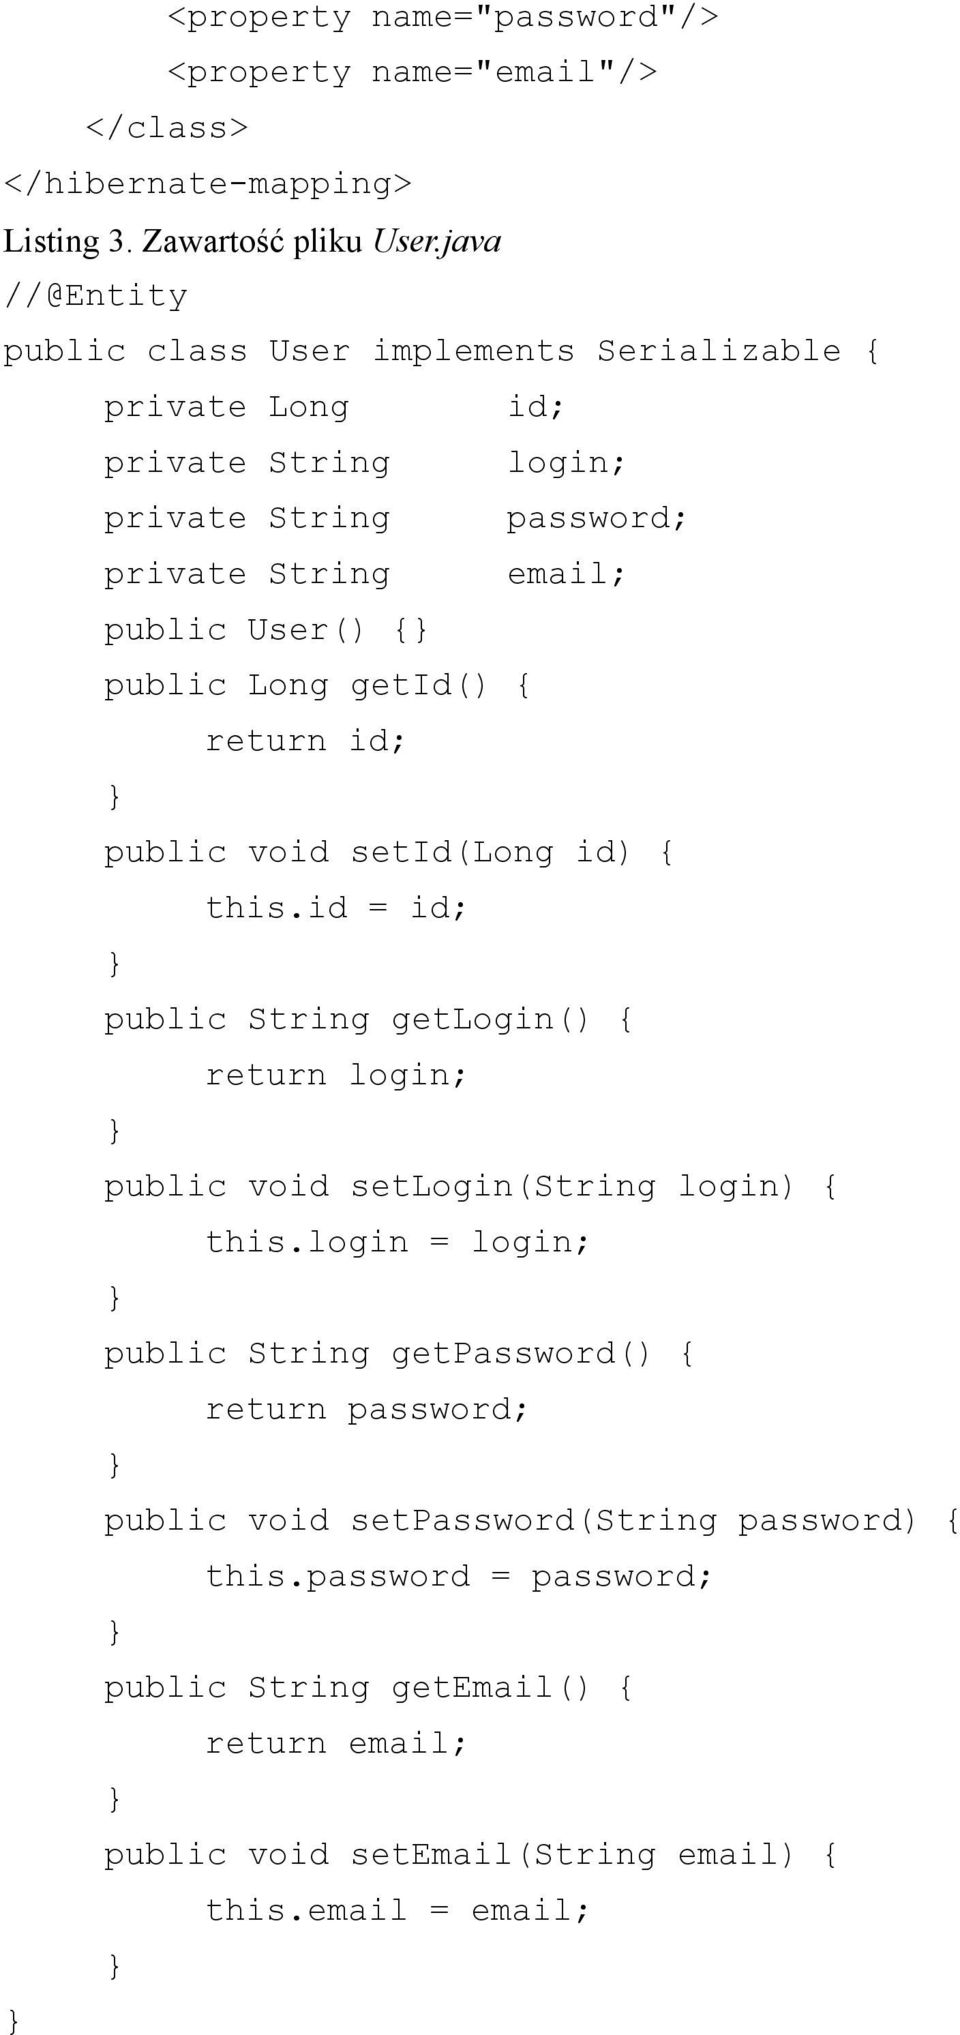 public Long getid() { return id; public void setid(long id) { this.id = id; public String getlogin() { return login; public void setlogin(string login) { this.